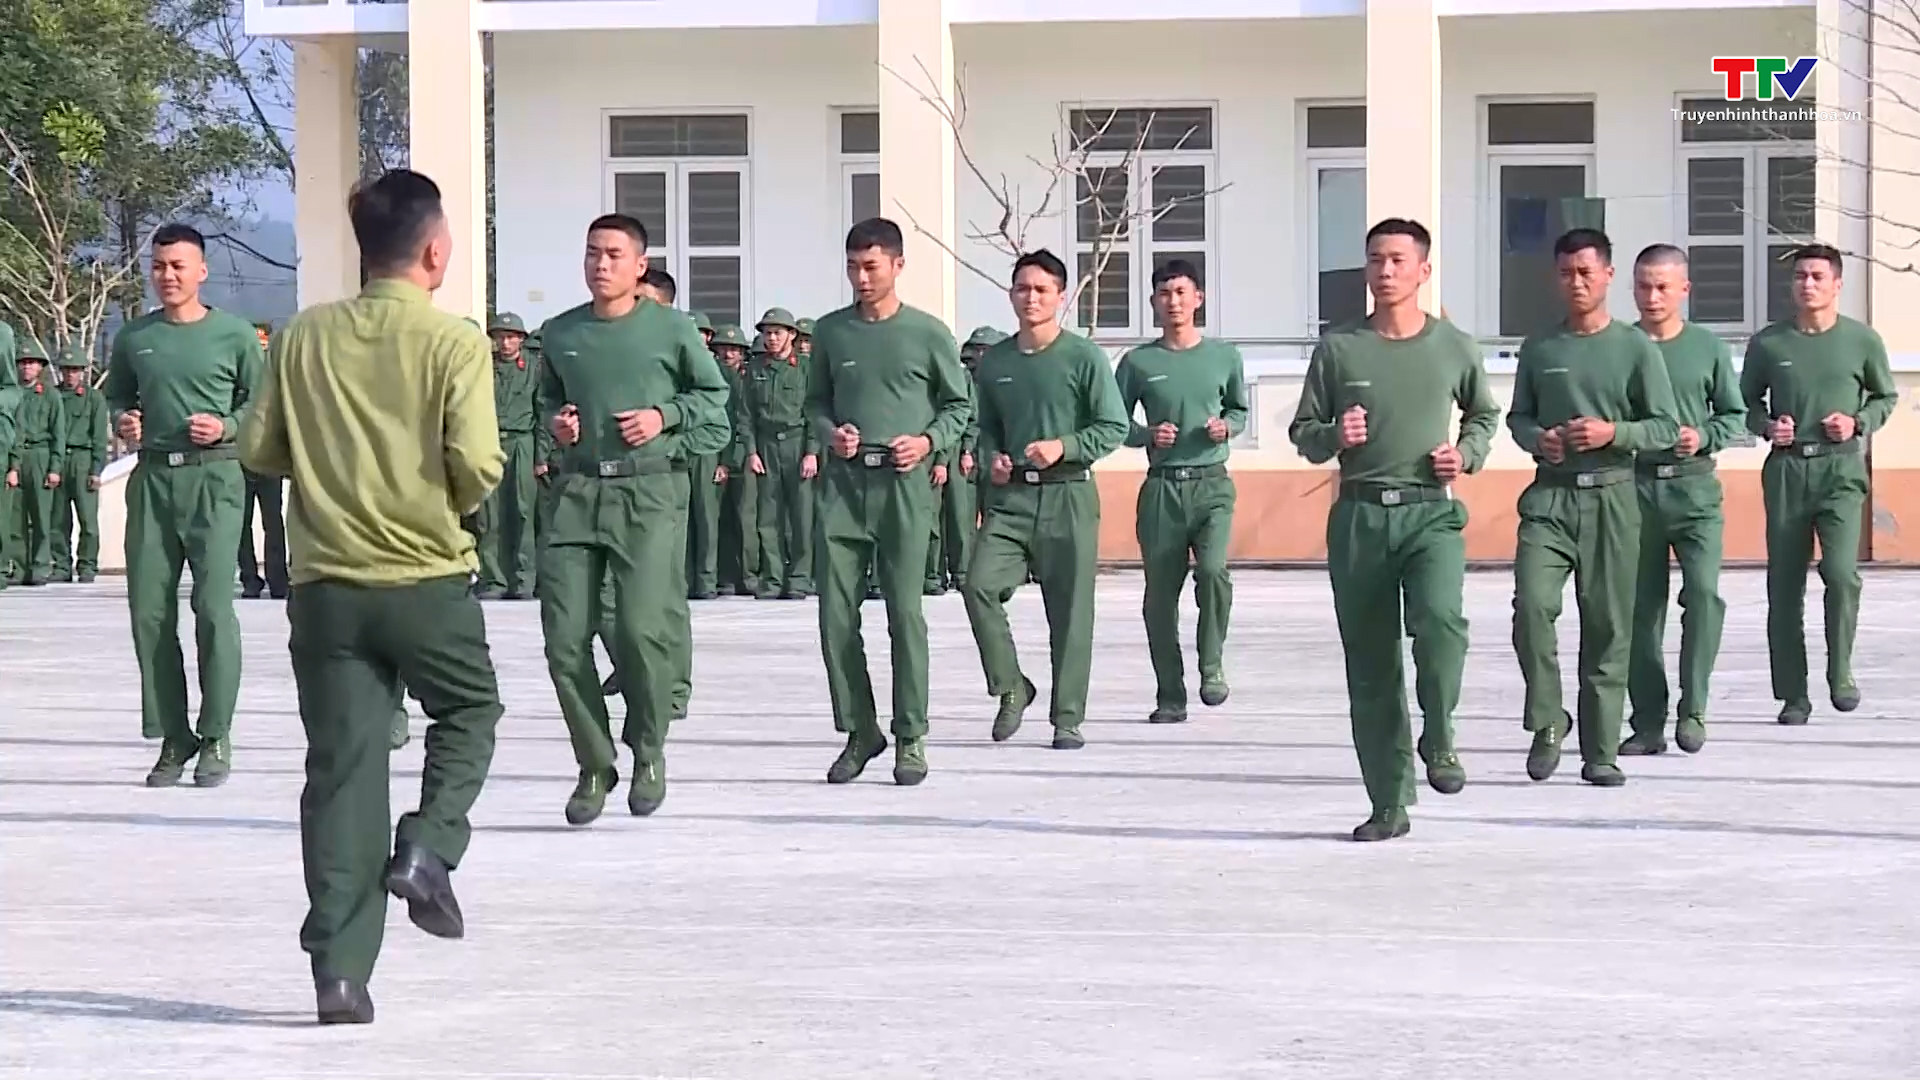 Môi trường quân đội giúp các tân binh rèn luyện và trưởng thành - Ảnh 3.